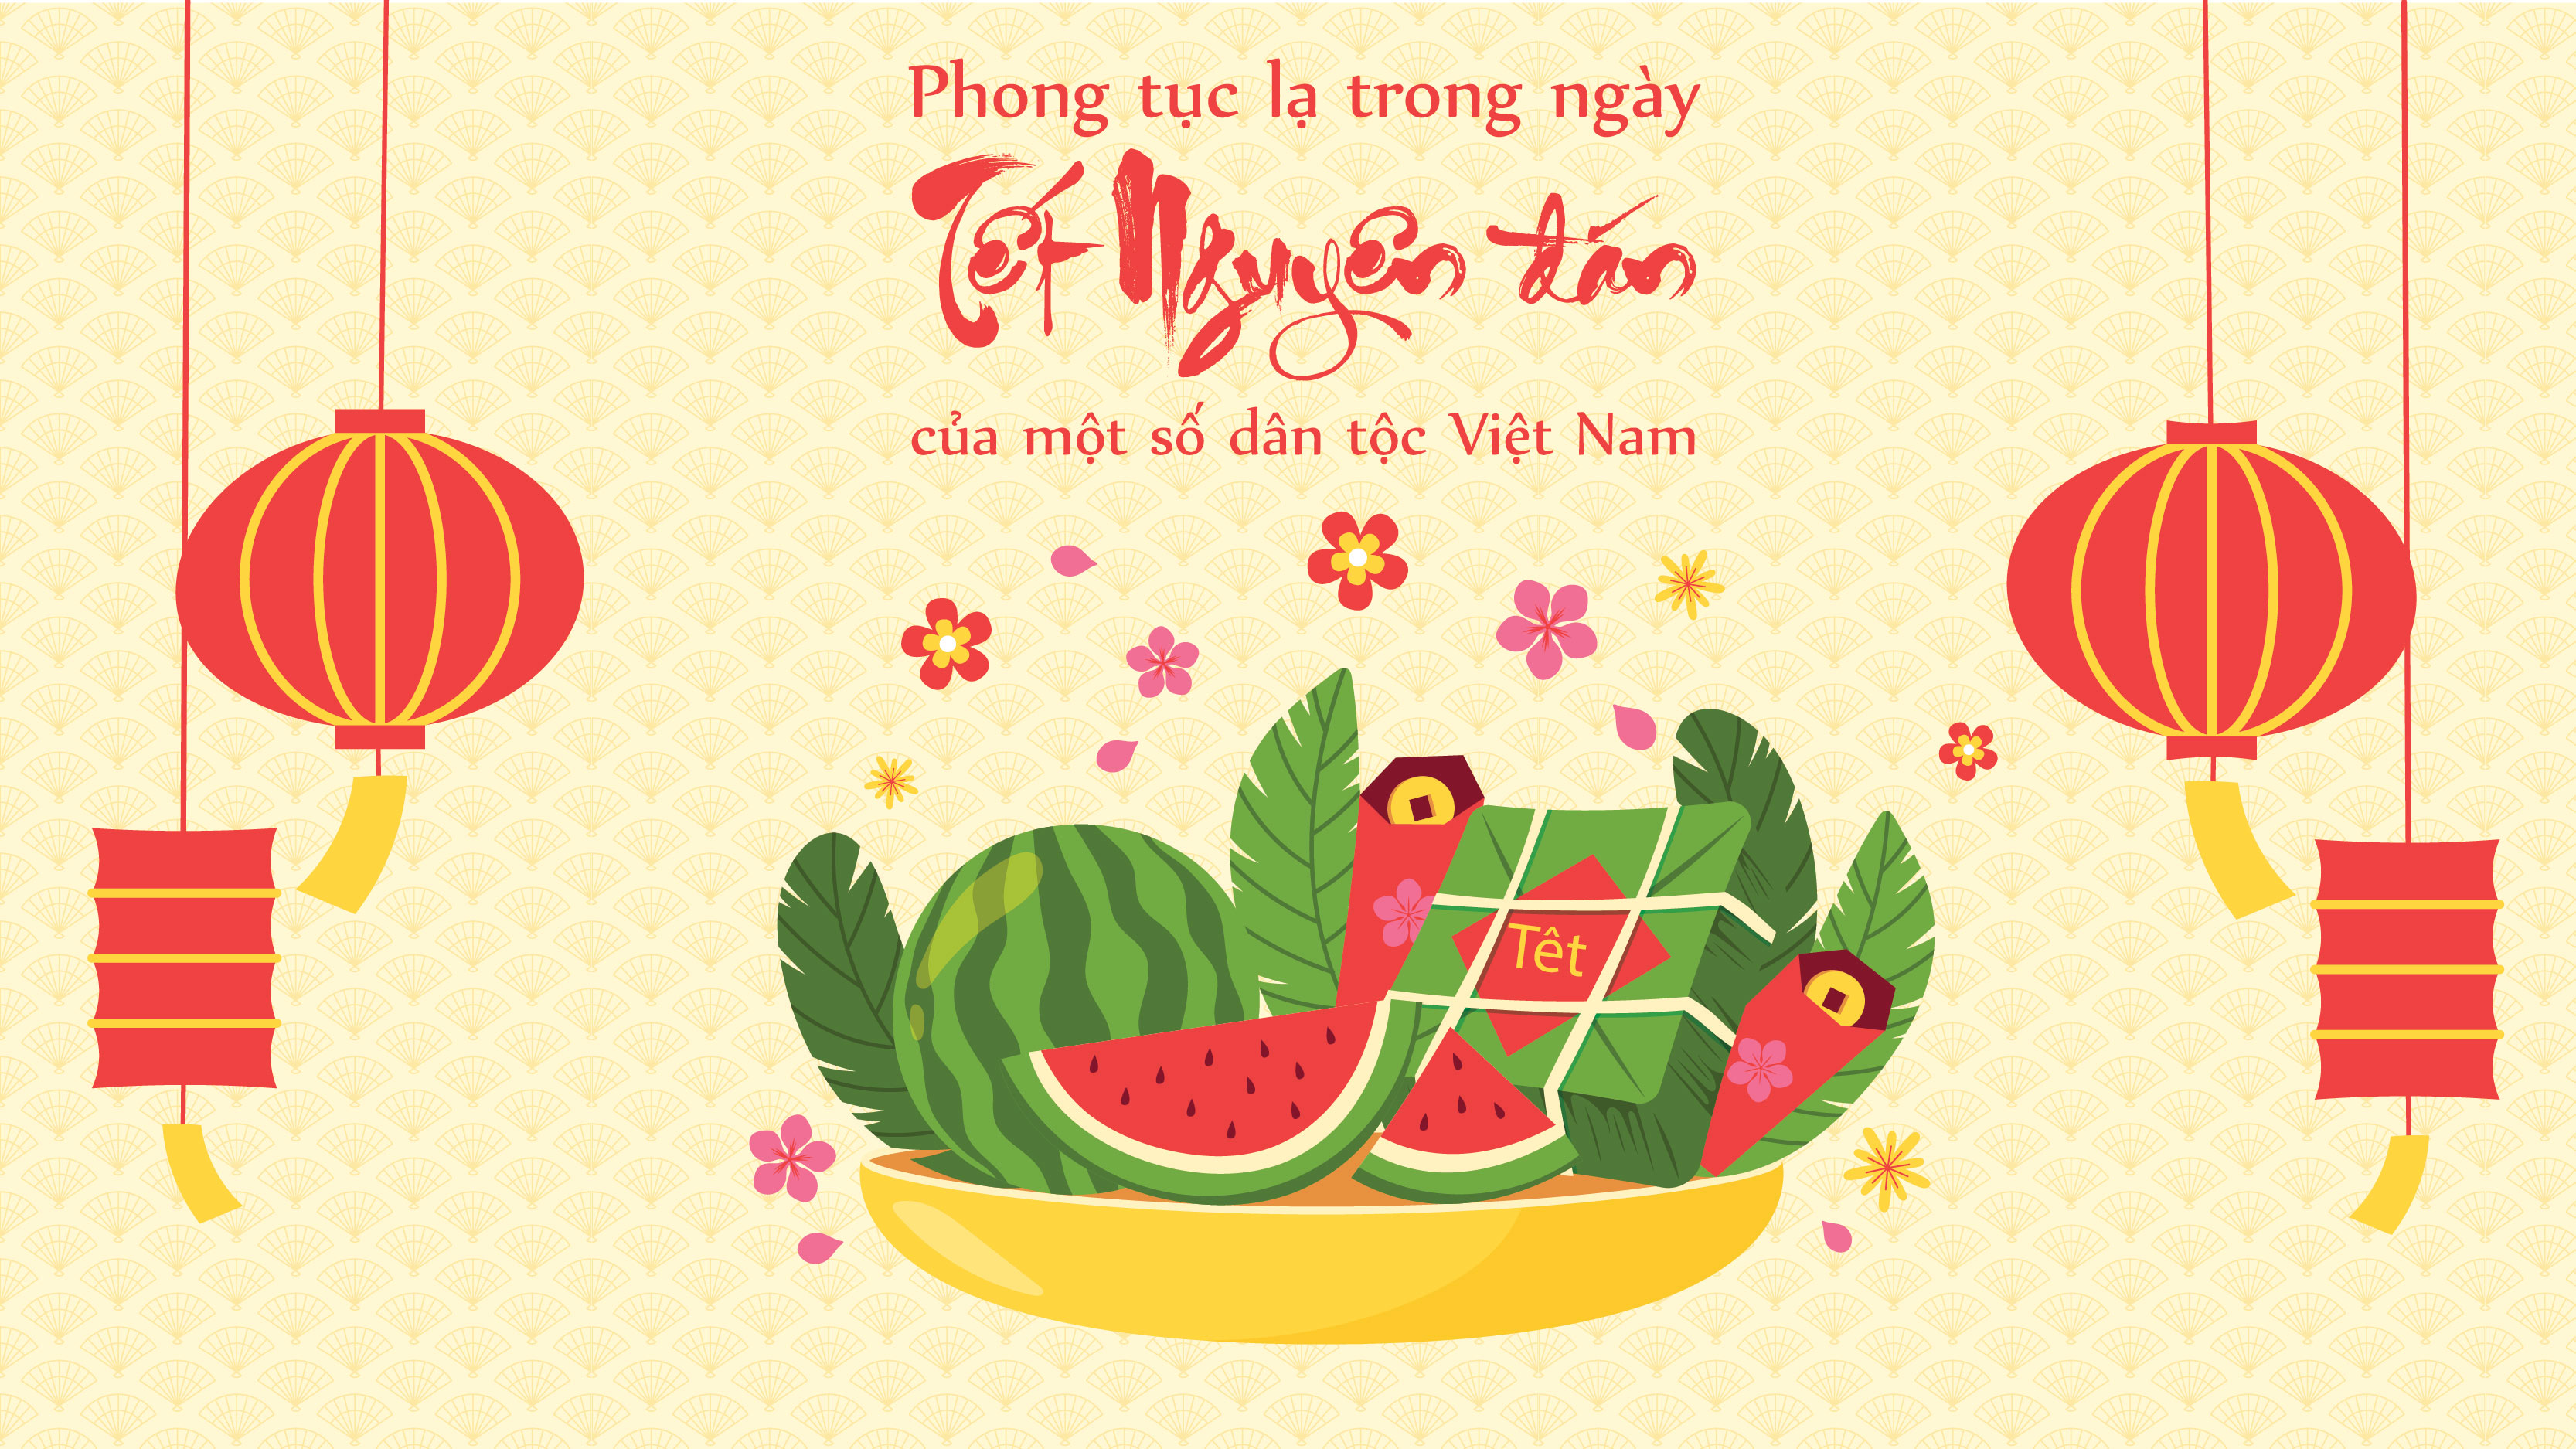 Phong tục Tết dân tộc Việt Nam, sự kết hợp tinh tế giữa văn hóa truyền thống và sự đổi mới, đã mang đến cho mọi người một mùa Tết đặc biệt và ý nghĩa hơn bao giờ hết. Hãy cùng nhau tìm hiểu và trân trọng những giá trị ấy qua bức ảnh chụp về phong tục Tết dân tộc Việt Nam.